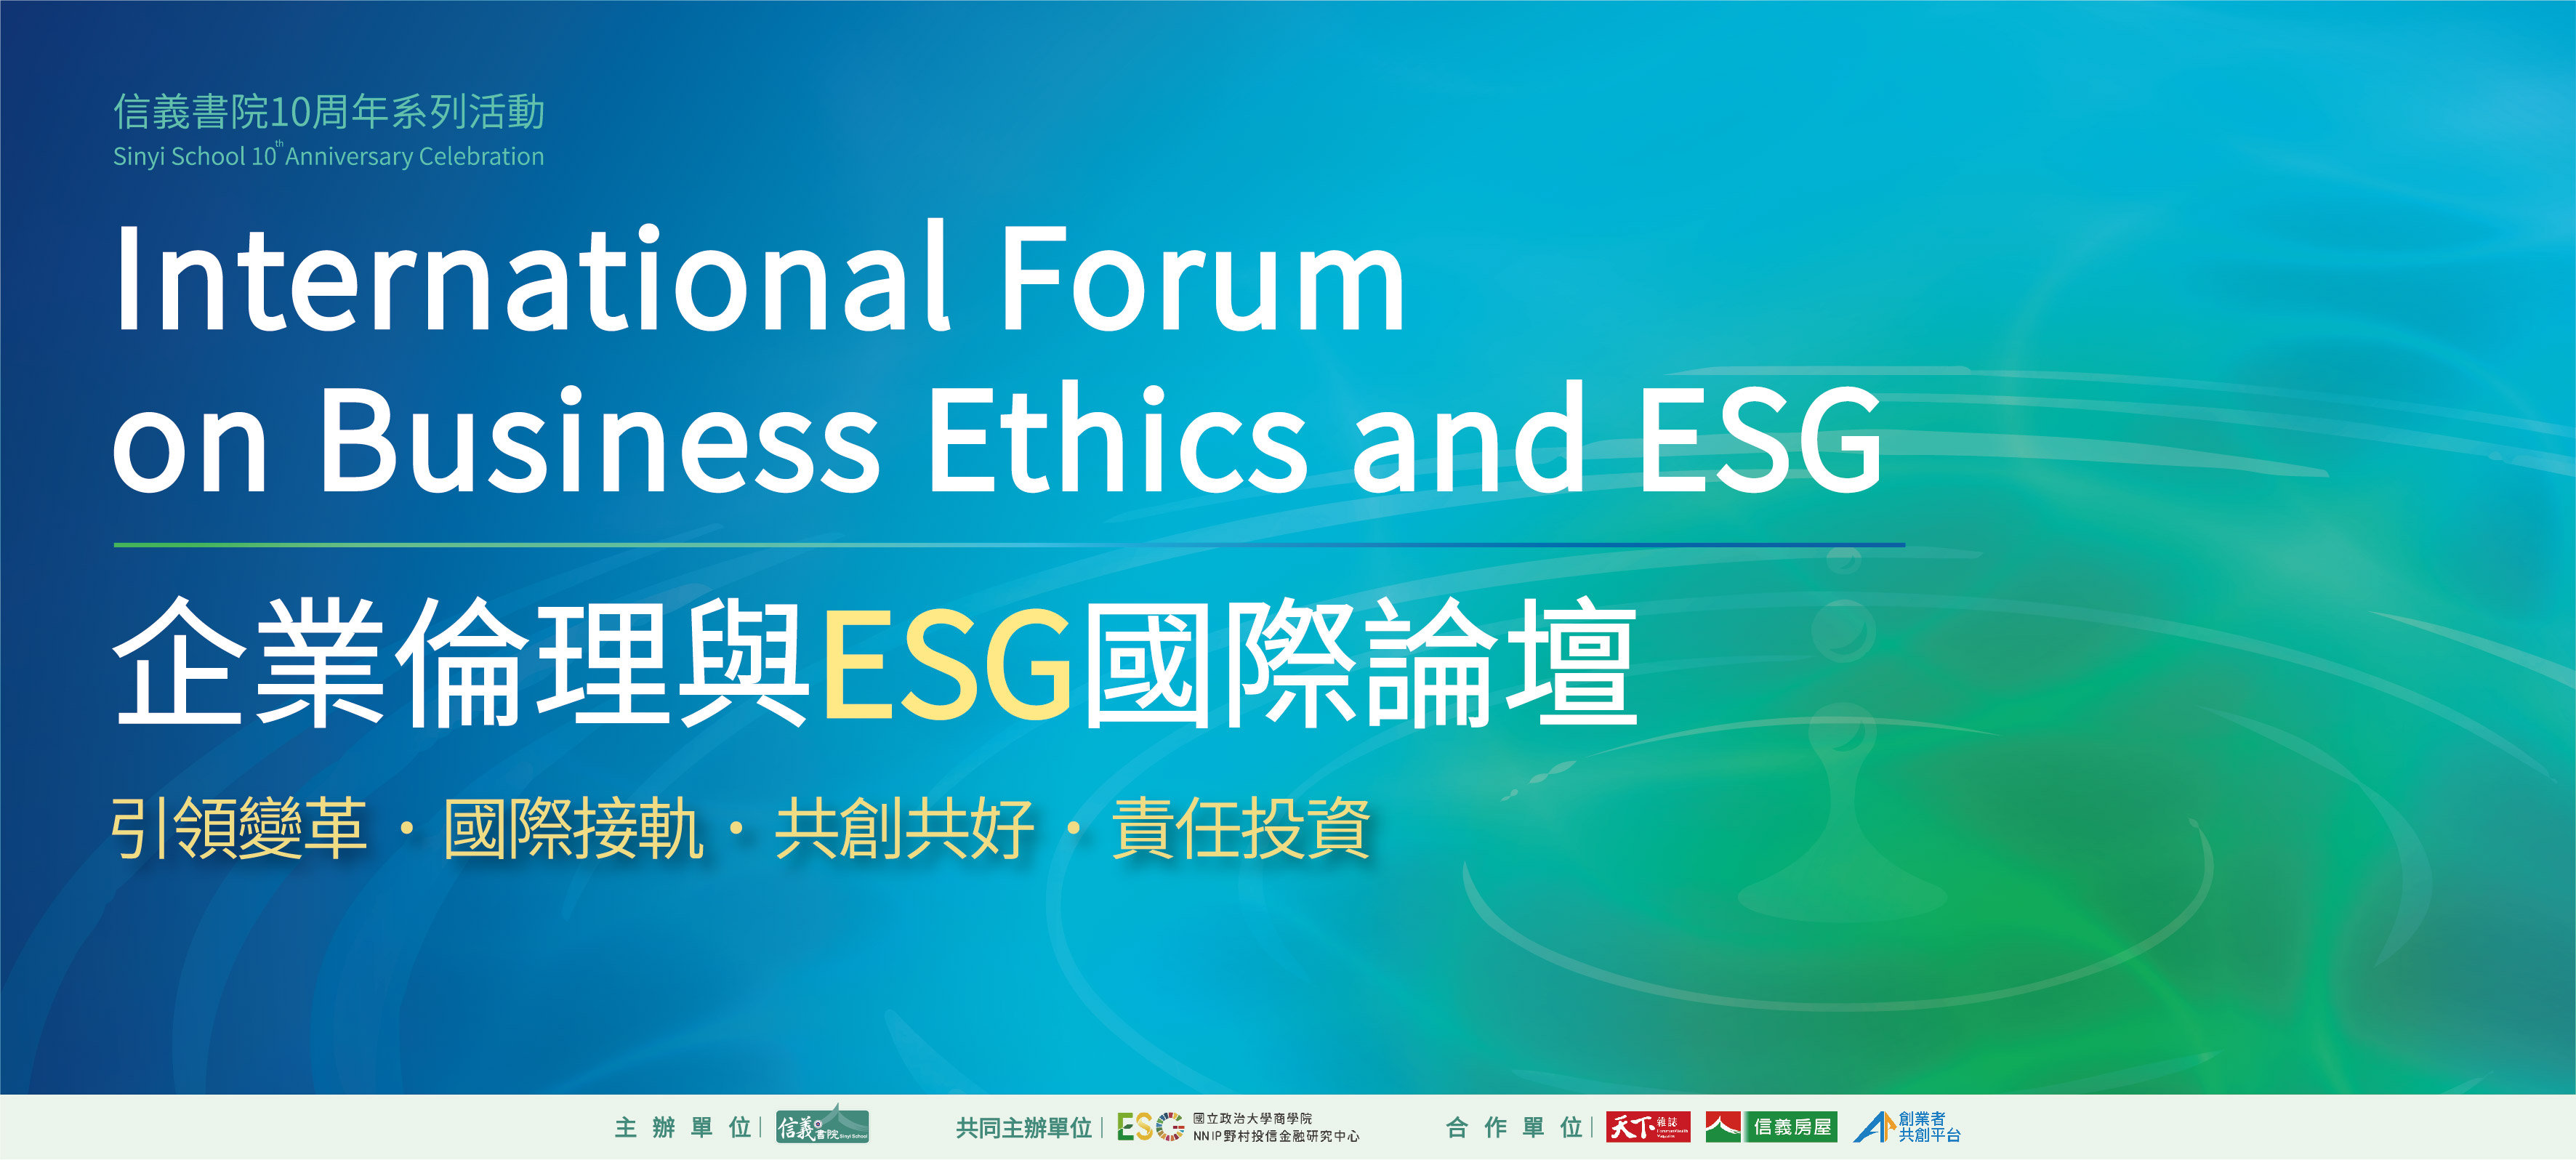 企業倫理與ESG國際論壇_活動主視覺_首頁輪播